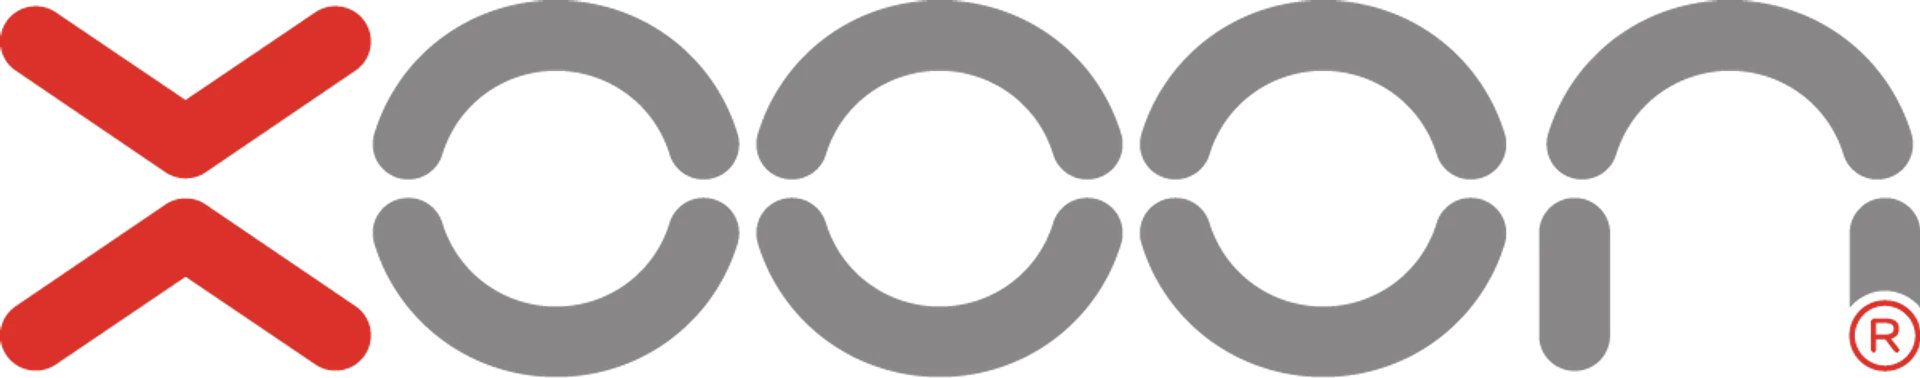 XOOON logo in de folder van deze week